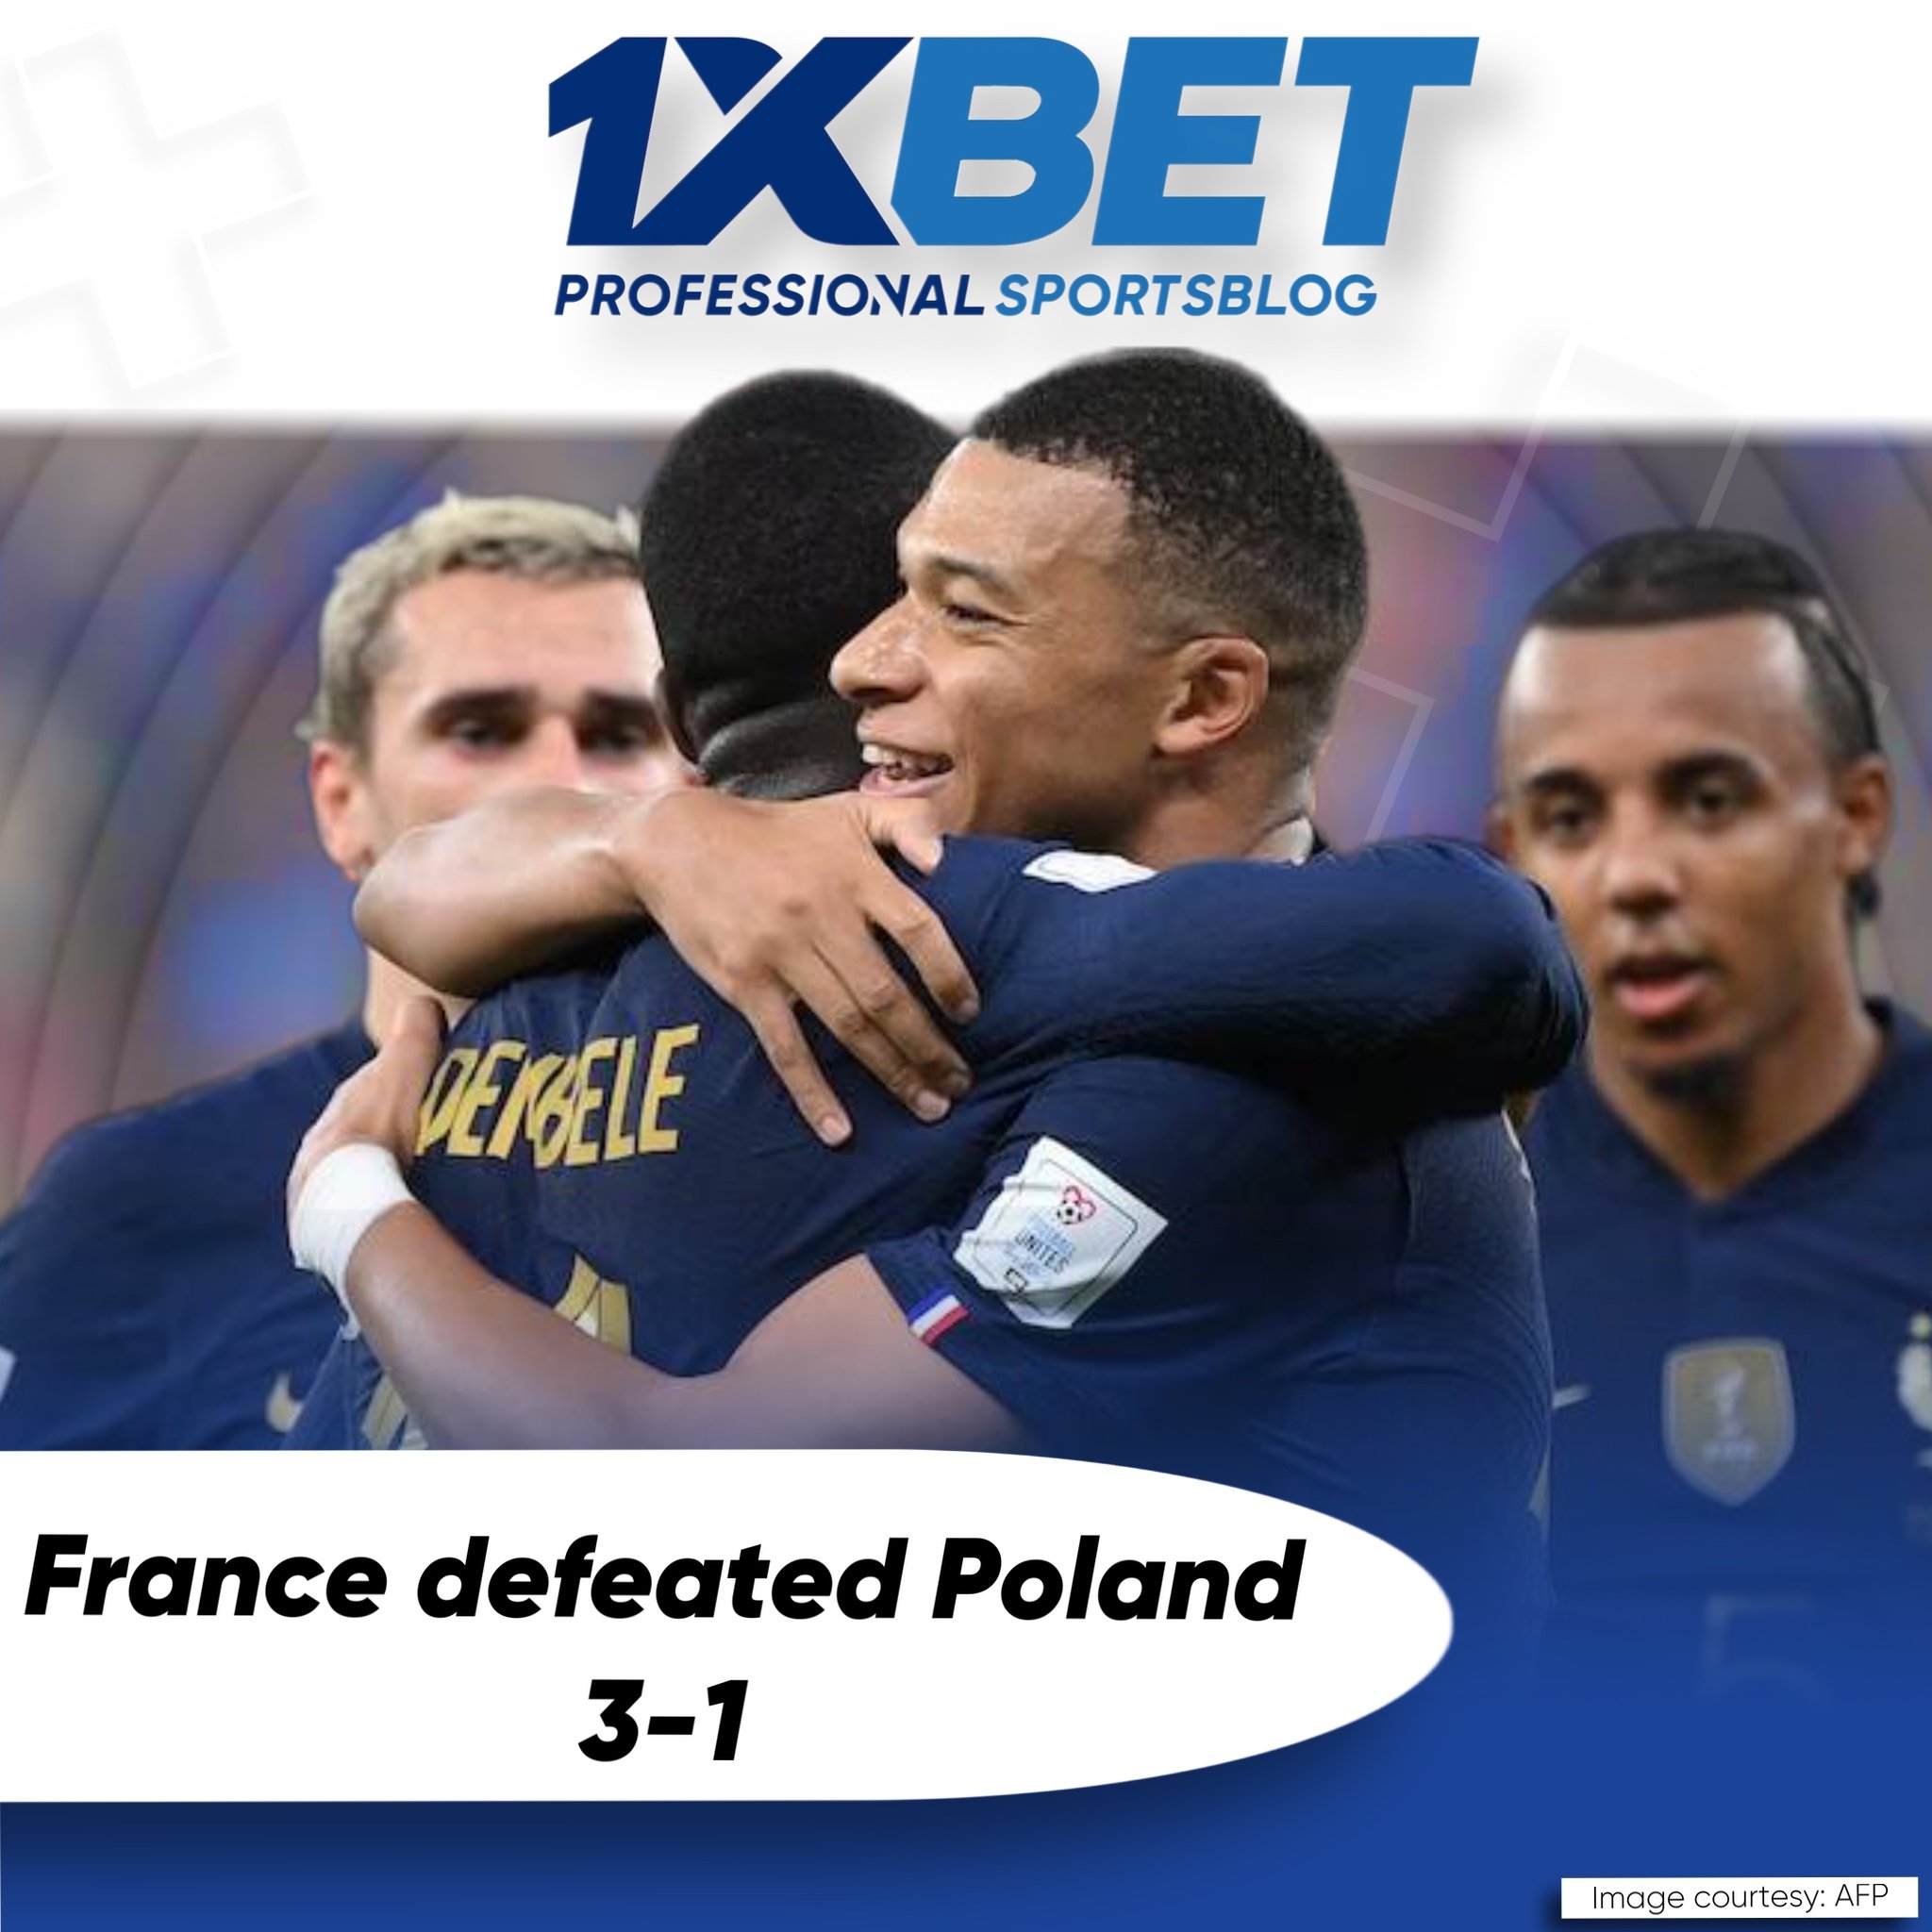 France defeated Poland 3-1